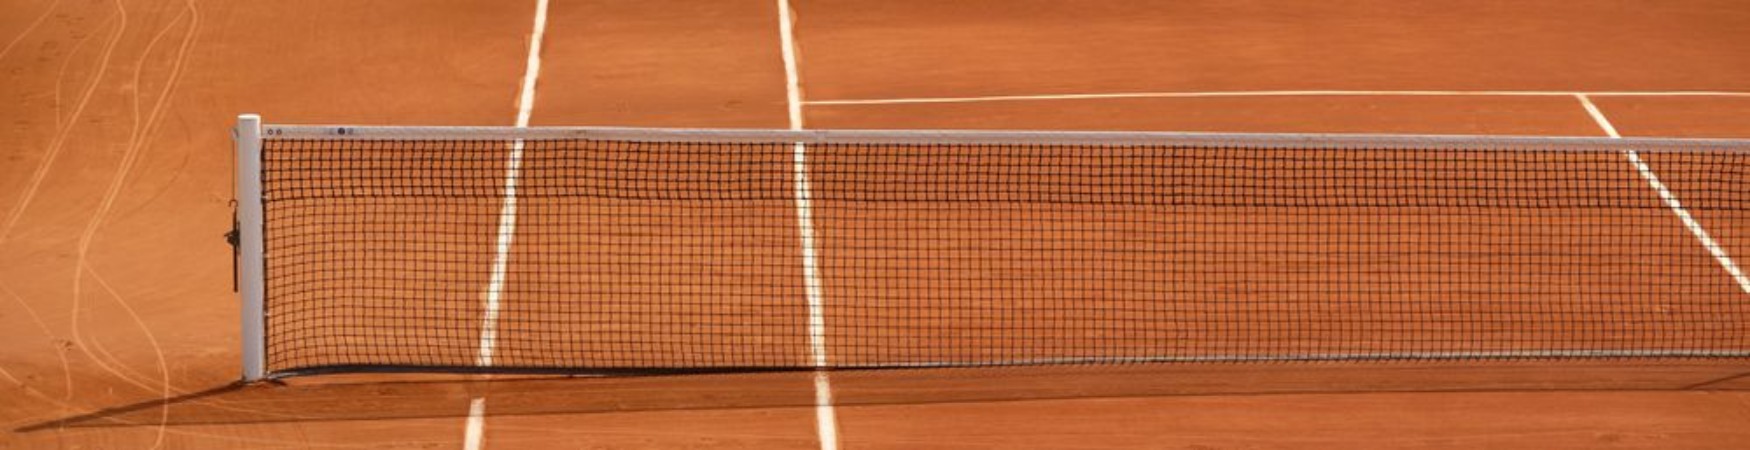 Afbeeldingen van Tennis Net